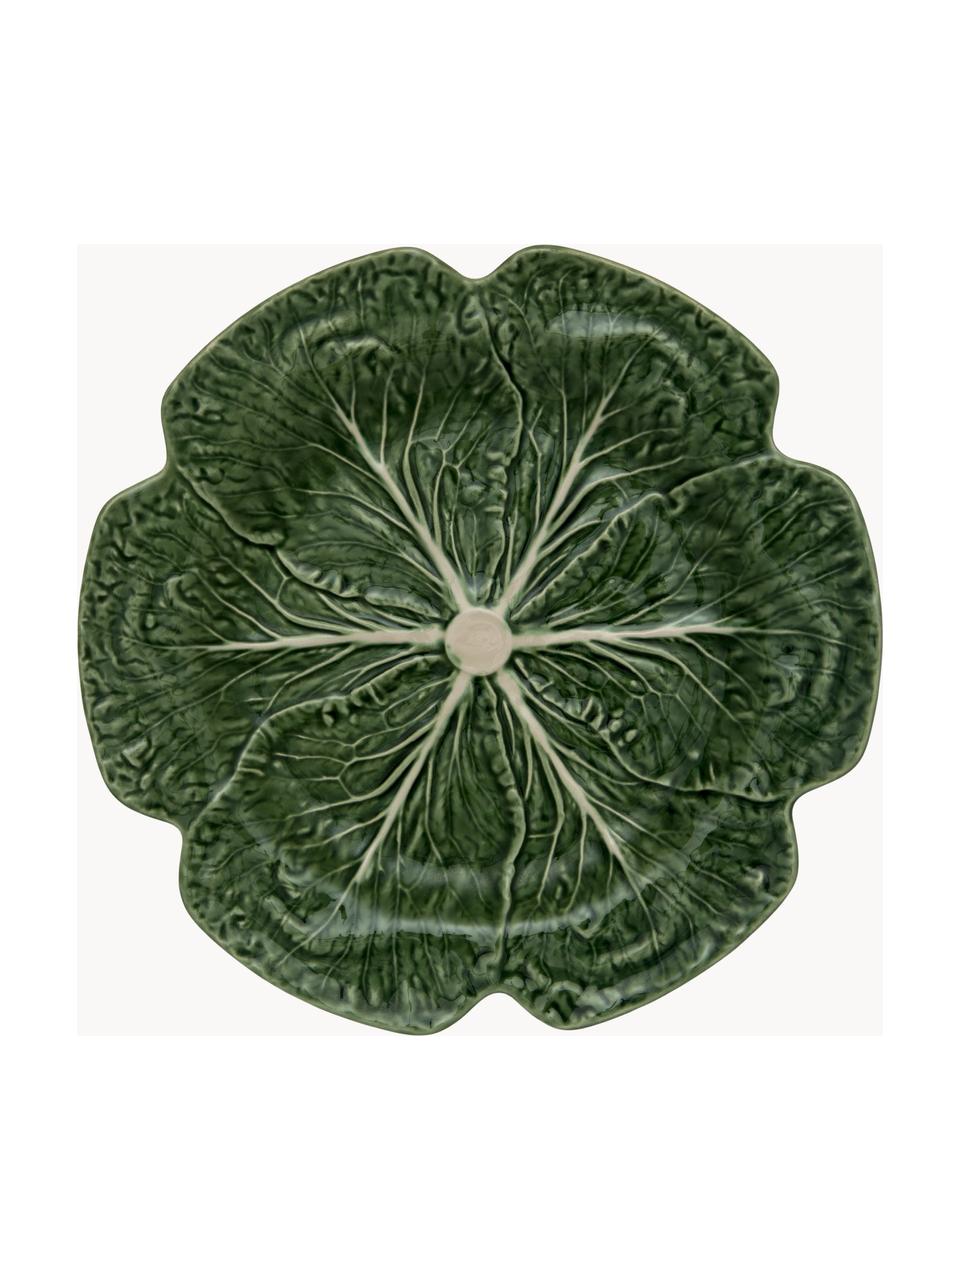 Plats de service peints à la main Cabbage, 2 pièces, Grès cérame, Vert foncé, Ø 31 x haut. 14 cm